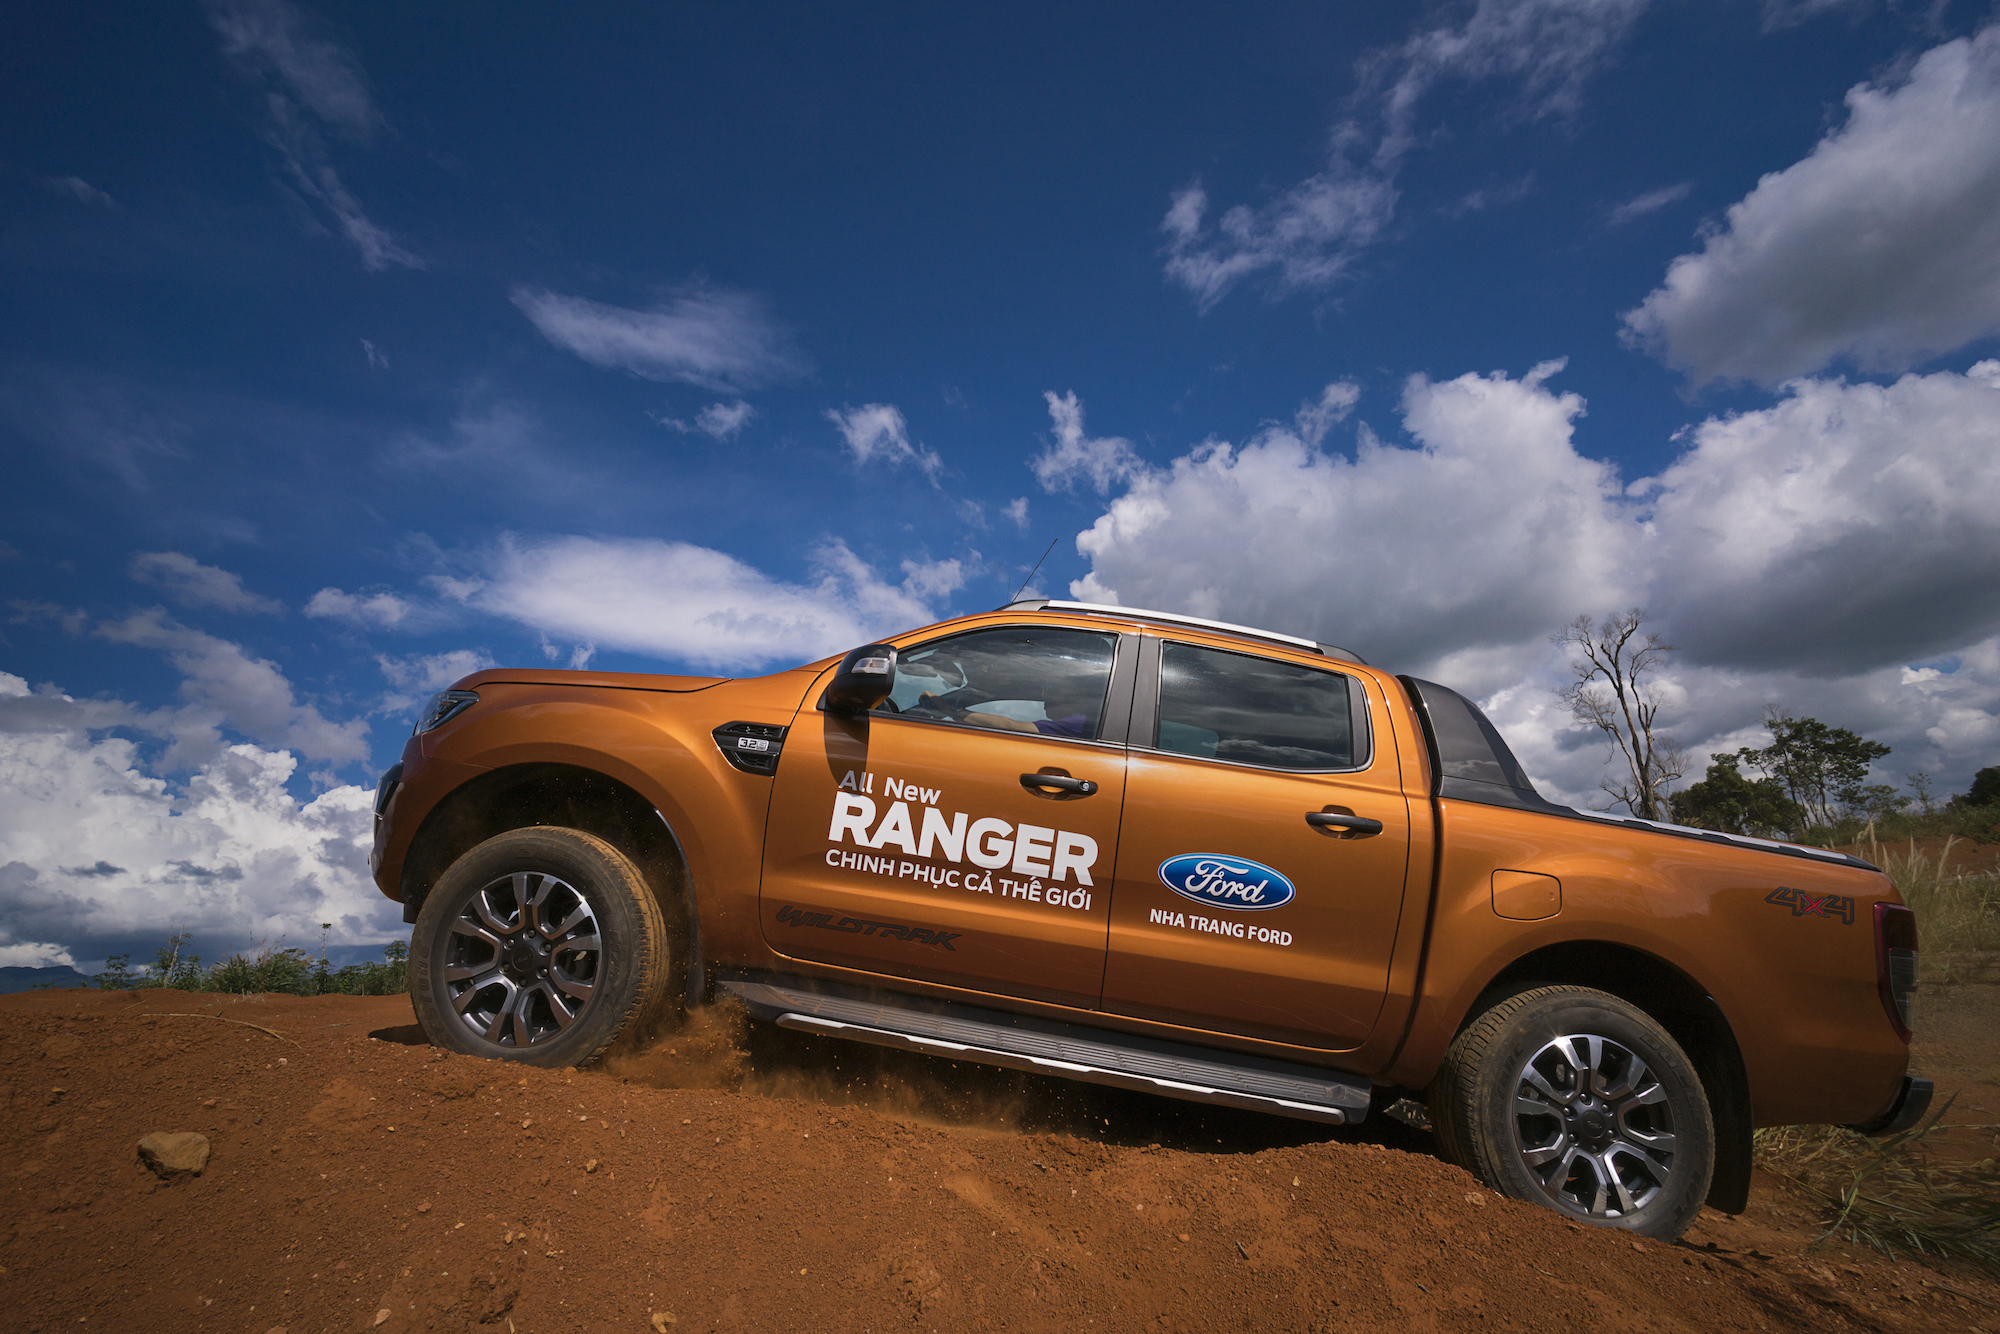 Ranger tiếp tục giúp Ford thiết lập các kỷ lục bán hàng